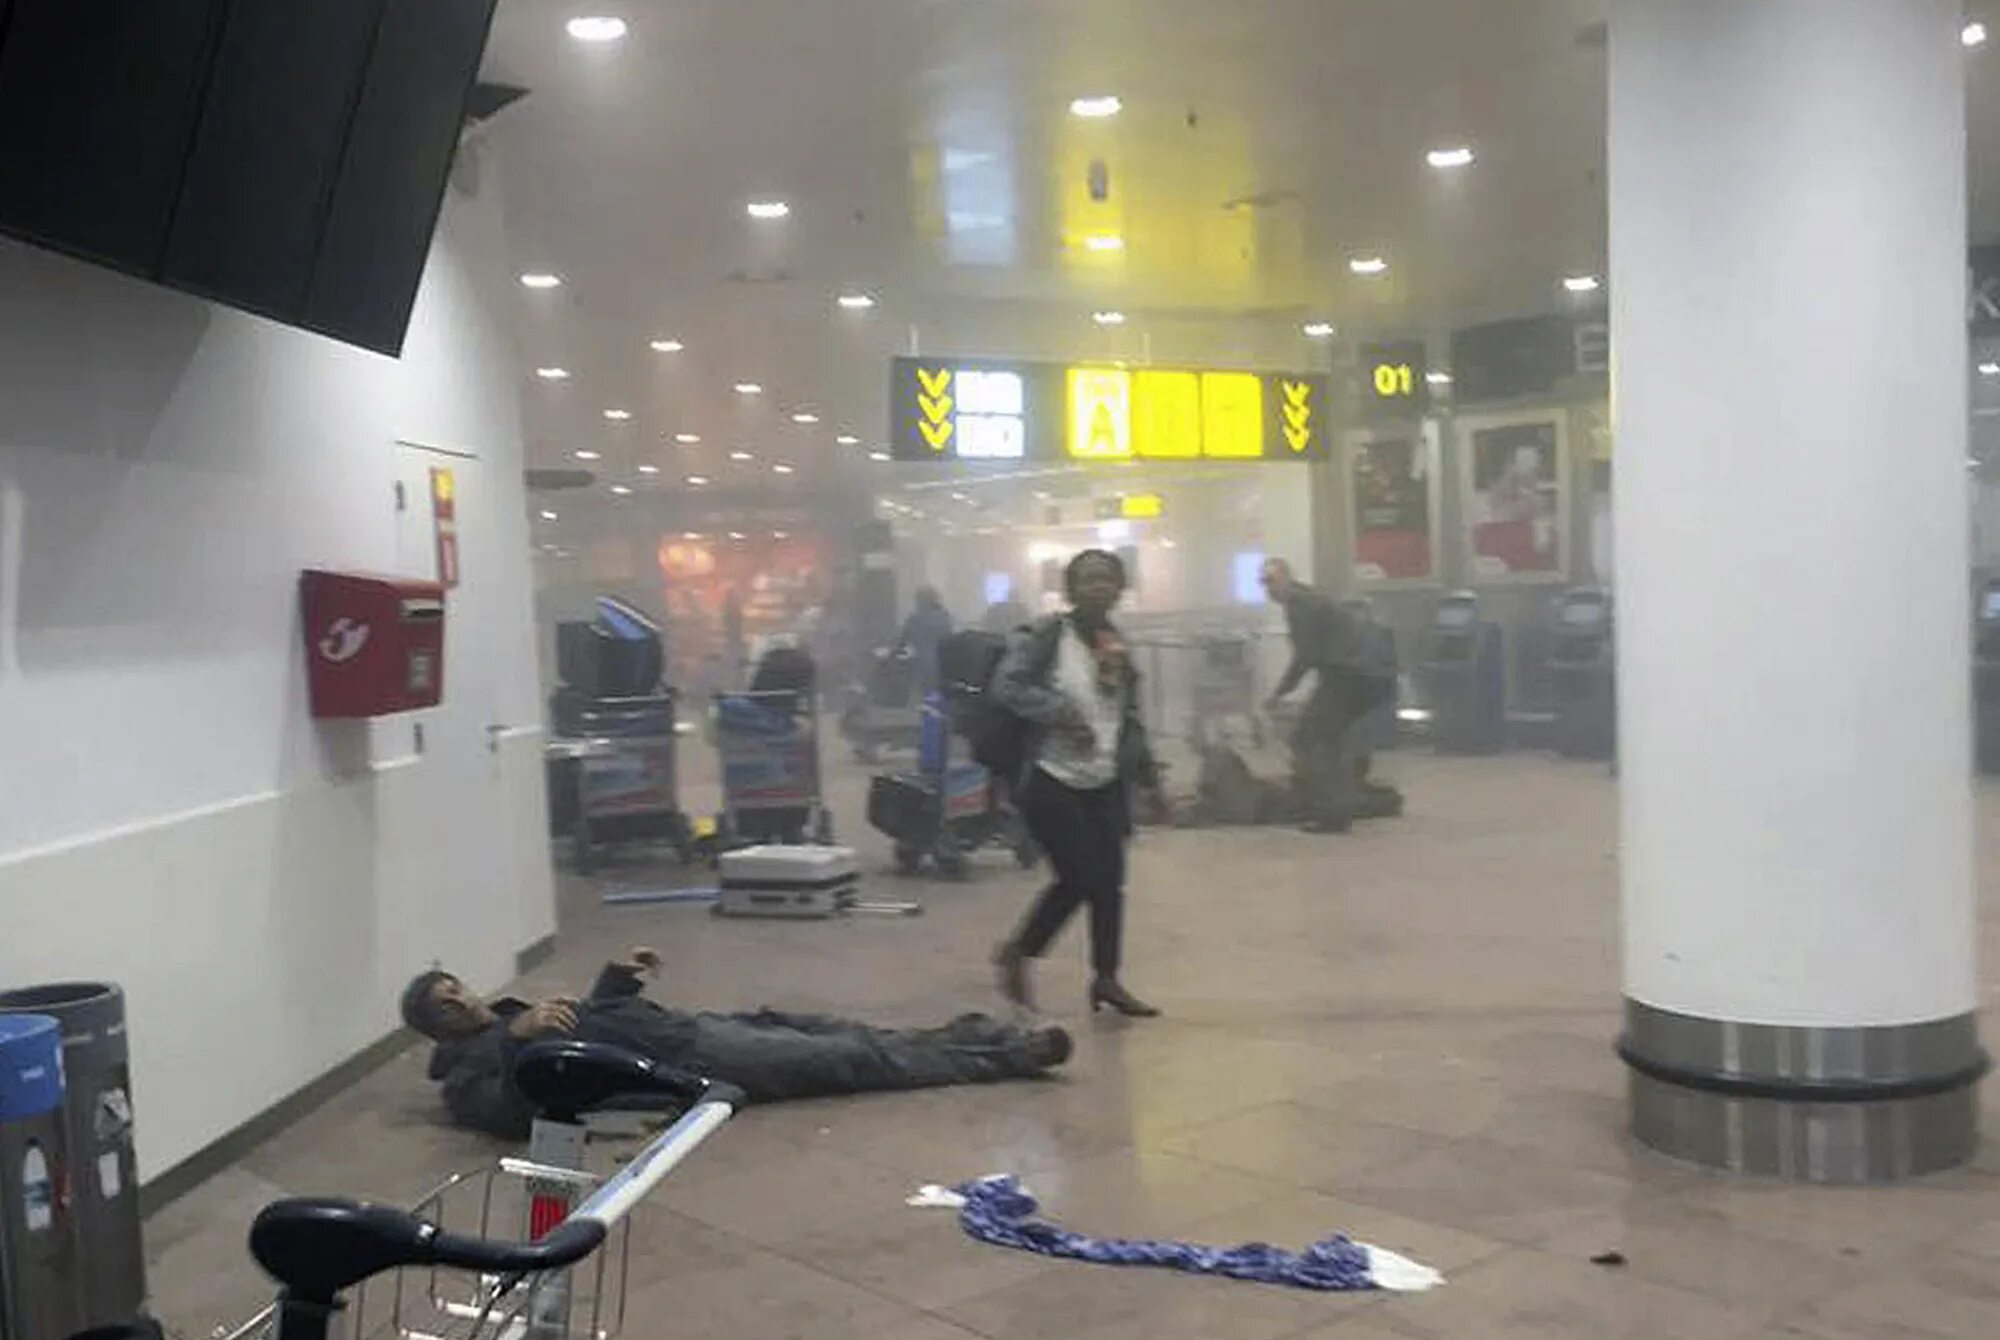 Теракт в бельгии. Борьба с терроризмом в аэропортах. Ограбление в аэропорту в Брюсселе. Теракт в Брюсселе в школе.